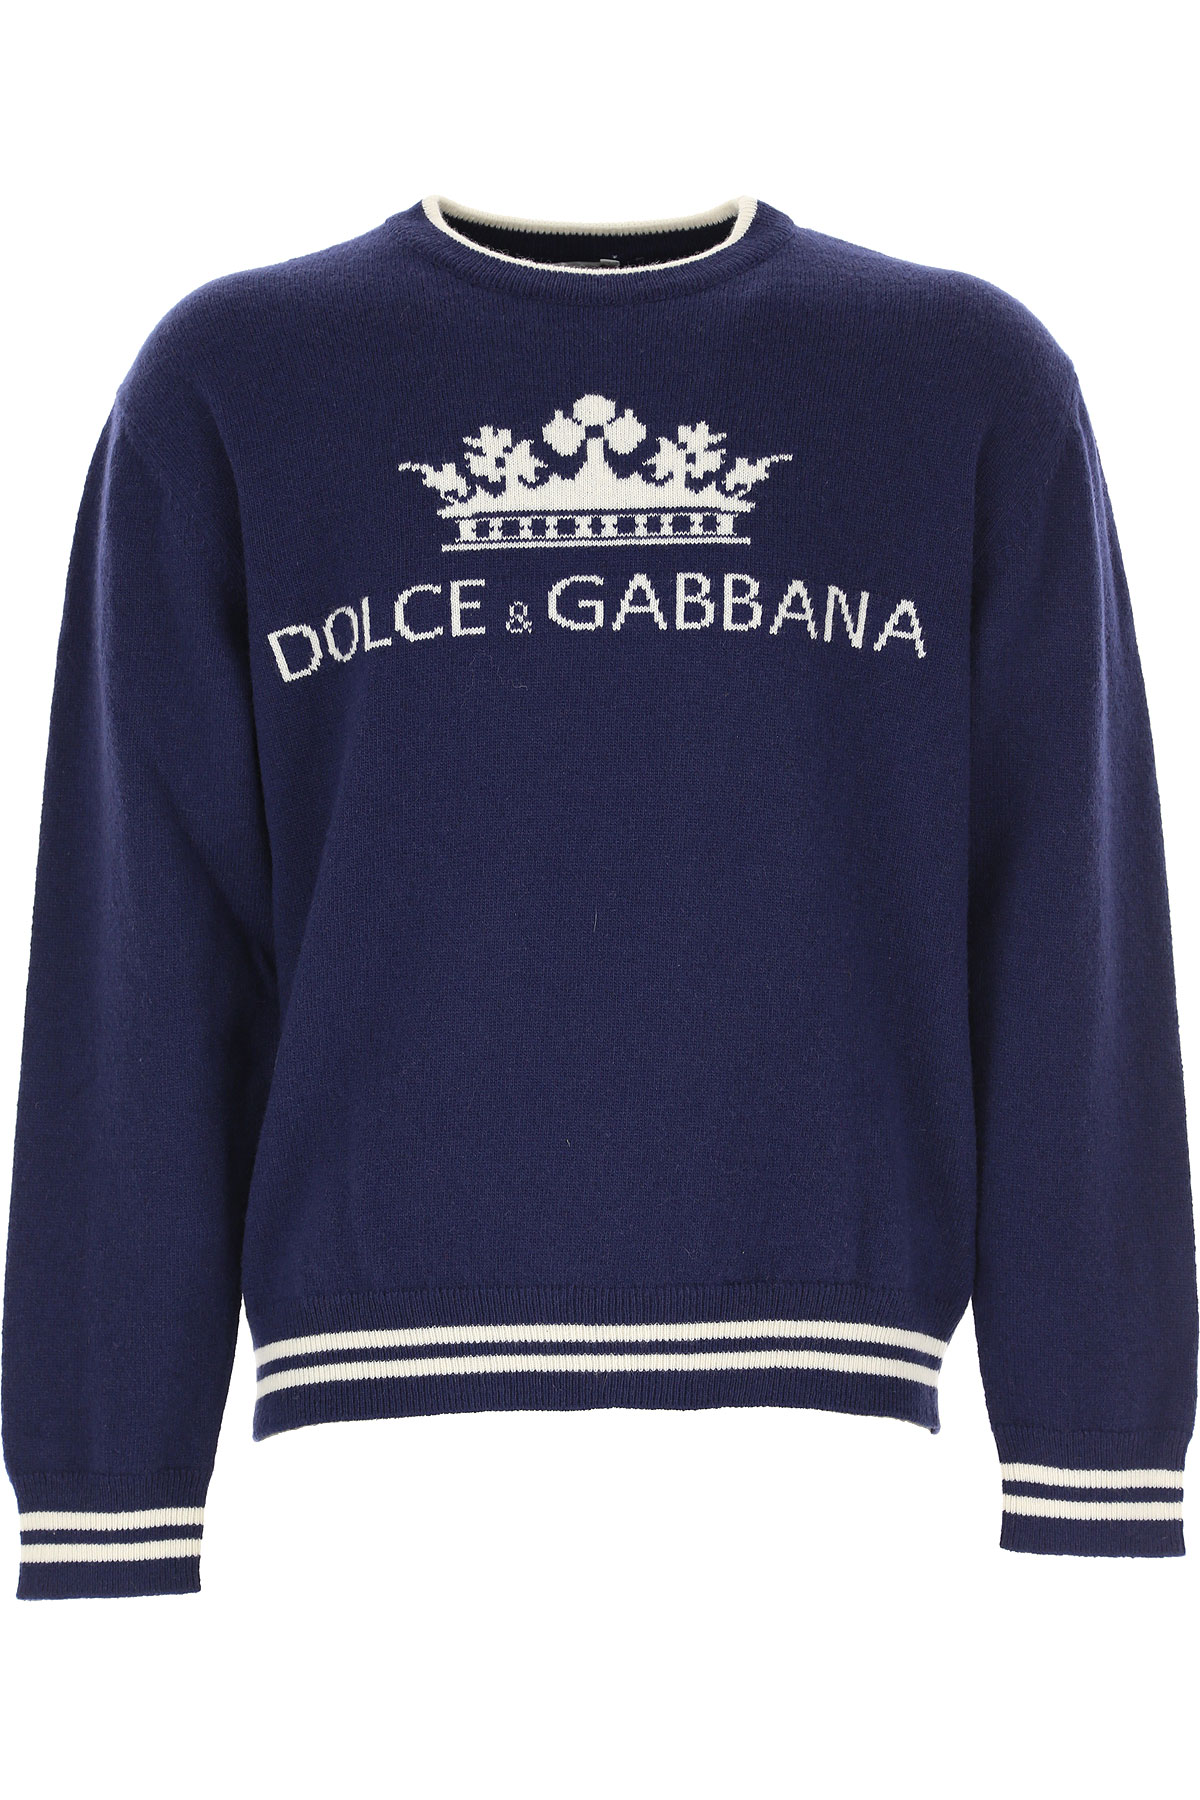 Dolce & Gabbana Kinder Pullover für Jungen Günstig im Outlet Sale, Blau, Schurwolle, 2017, 10Y 5Y